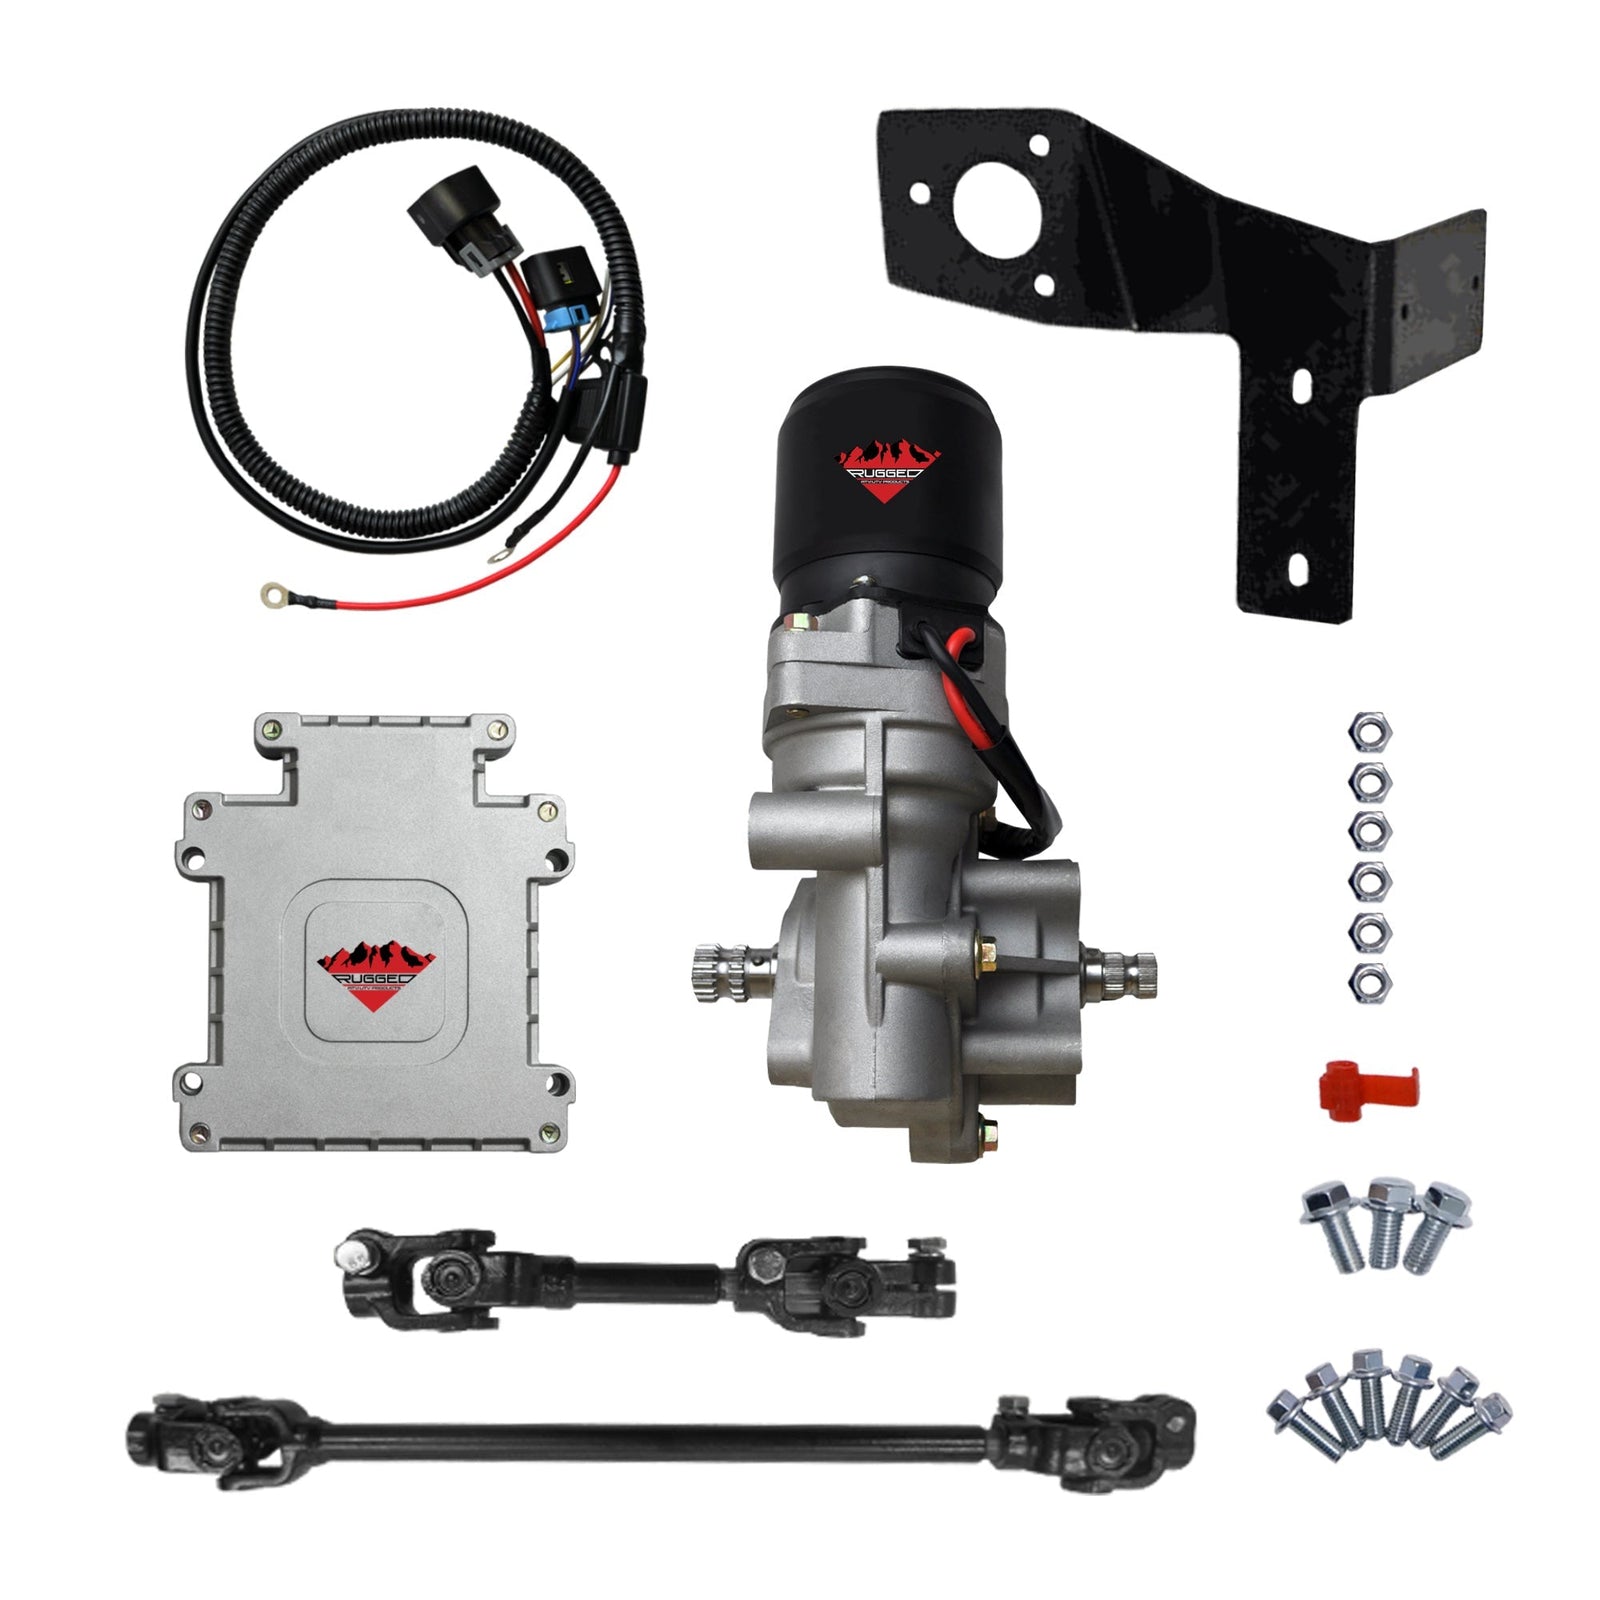 John Deere Gator HPX Rugged Electric Power Steering Kit